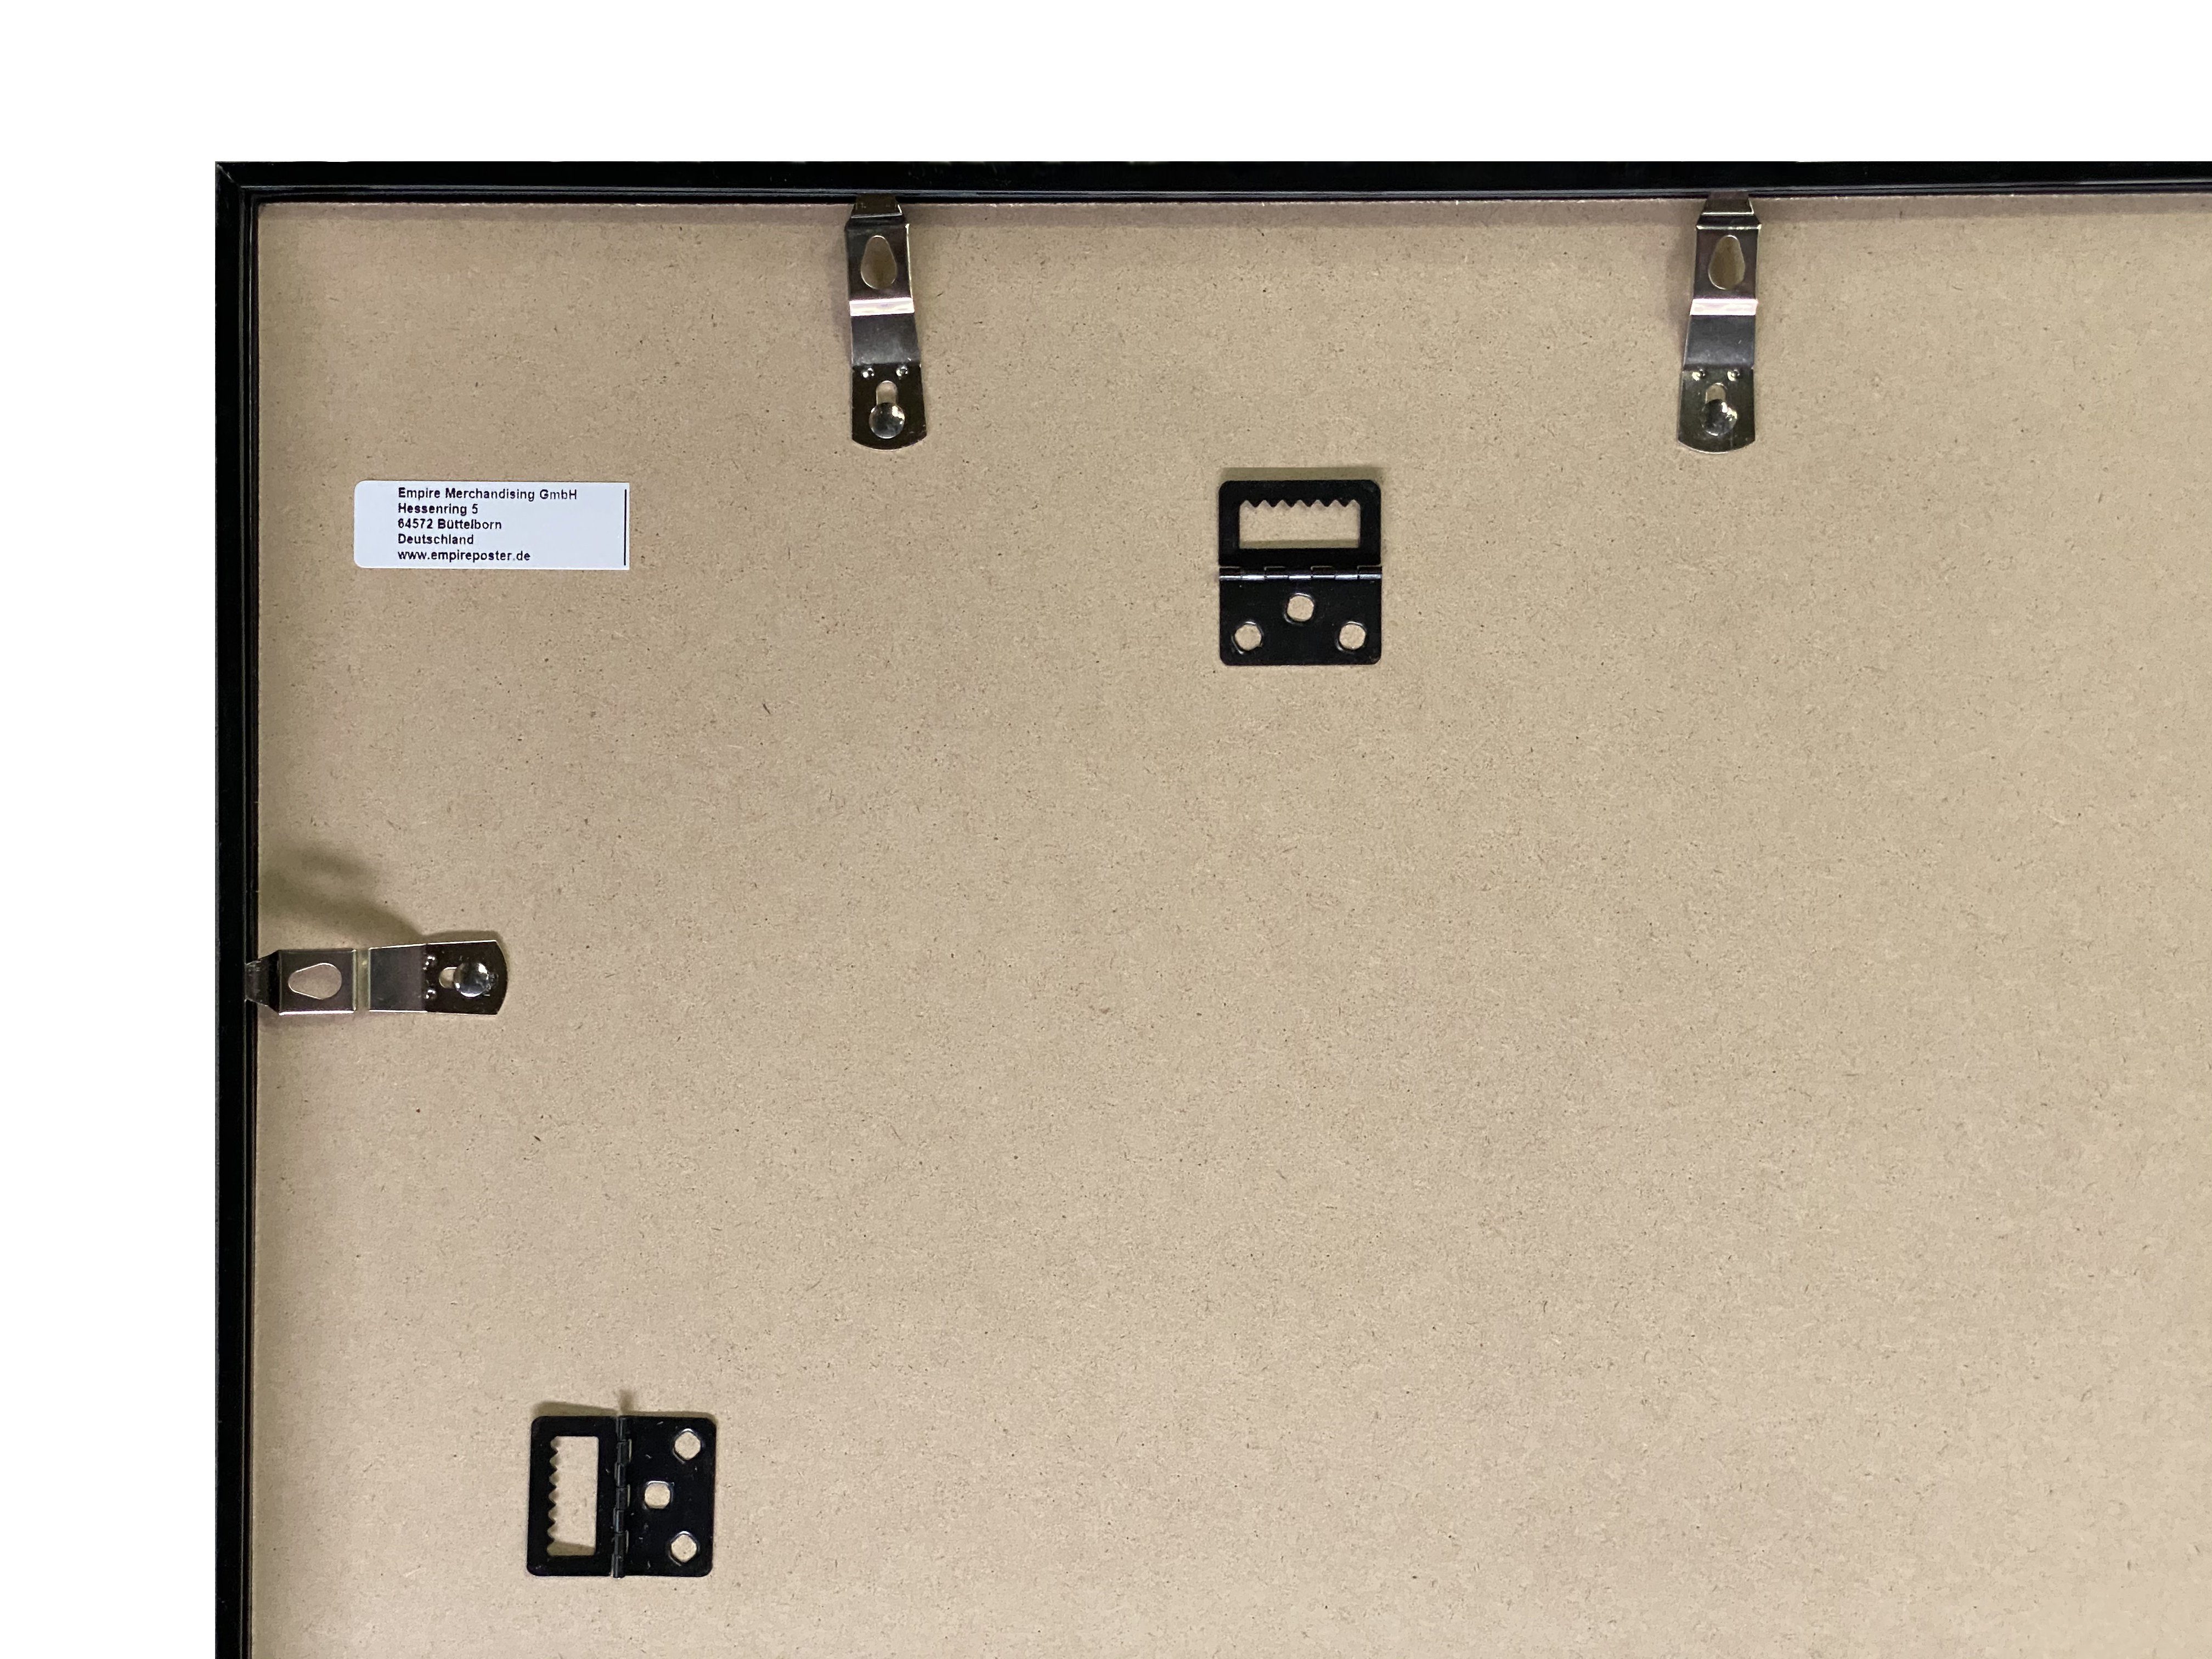 empireposter Rahmen Posterrahmen 61x91,5cm, Acryl-Scheibe mit Wechselrahmen Shinsuke® Farbe weiss Profil: 15mm Maxi-Poster Kunststoff